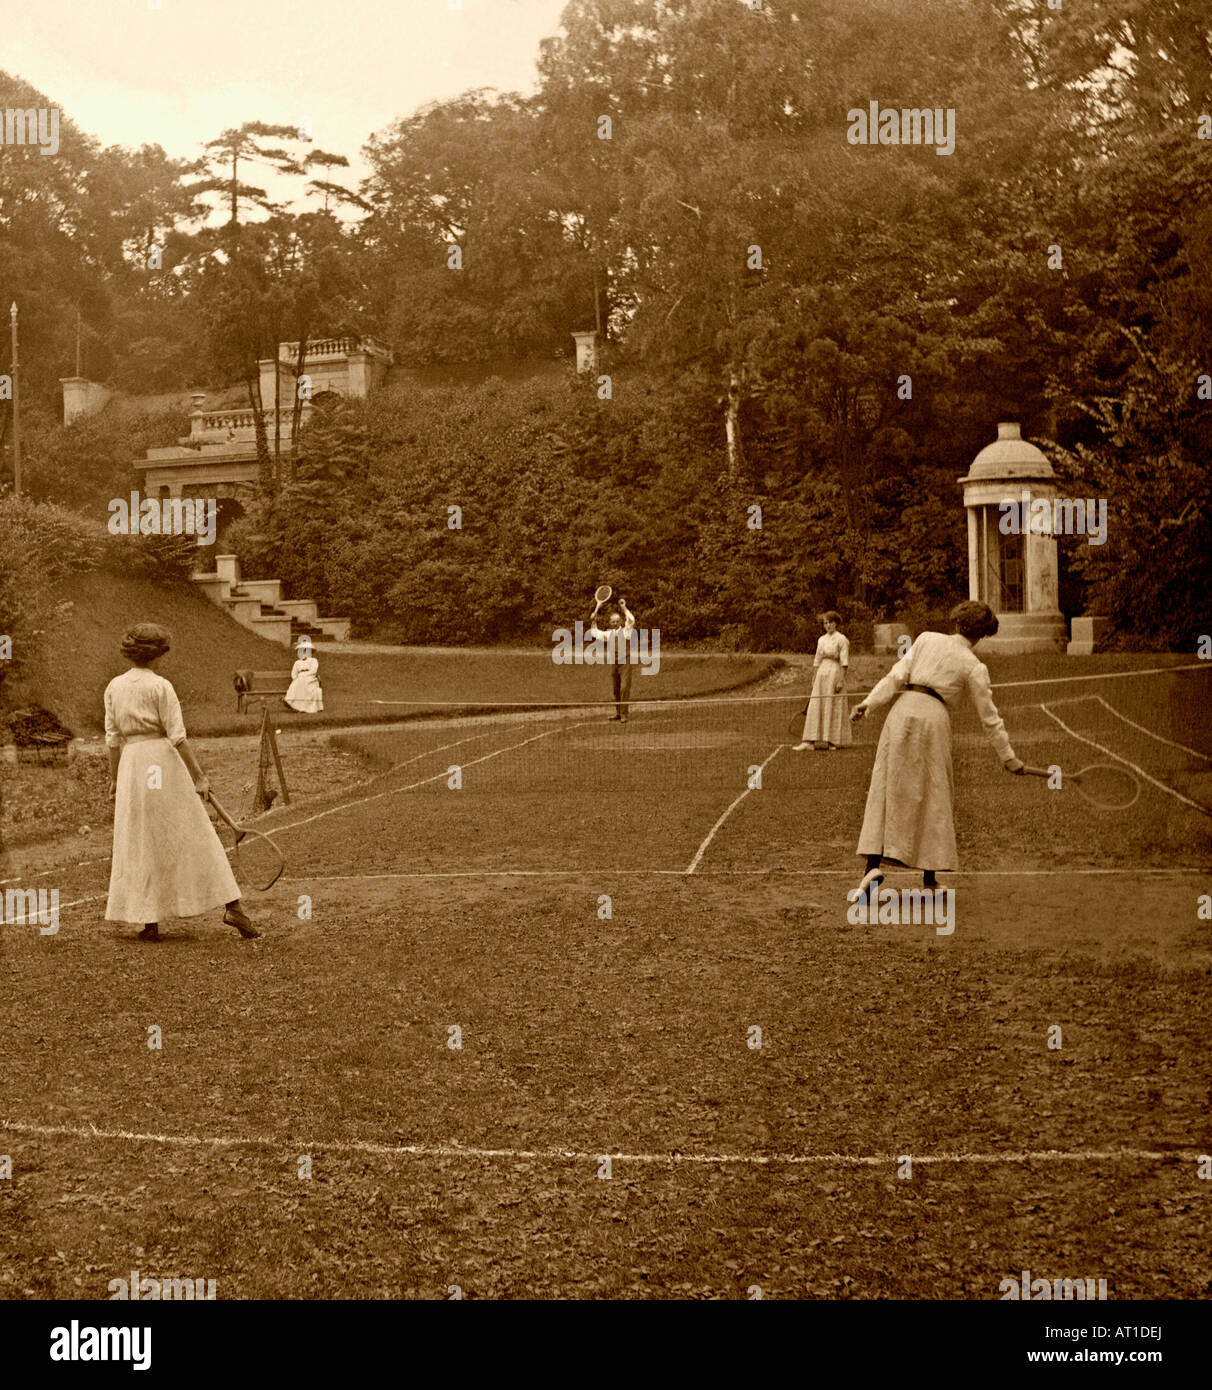 Un jeu de tennis en douceur au Royaume-Uni vers 1900. Un homme et 3 femmes jouent dans une maison de campagne/une demeure ancestrale sur un terrain accidenté – un passe-temps de classe supérieure. Banque D'Images